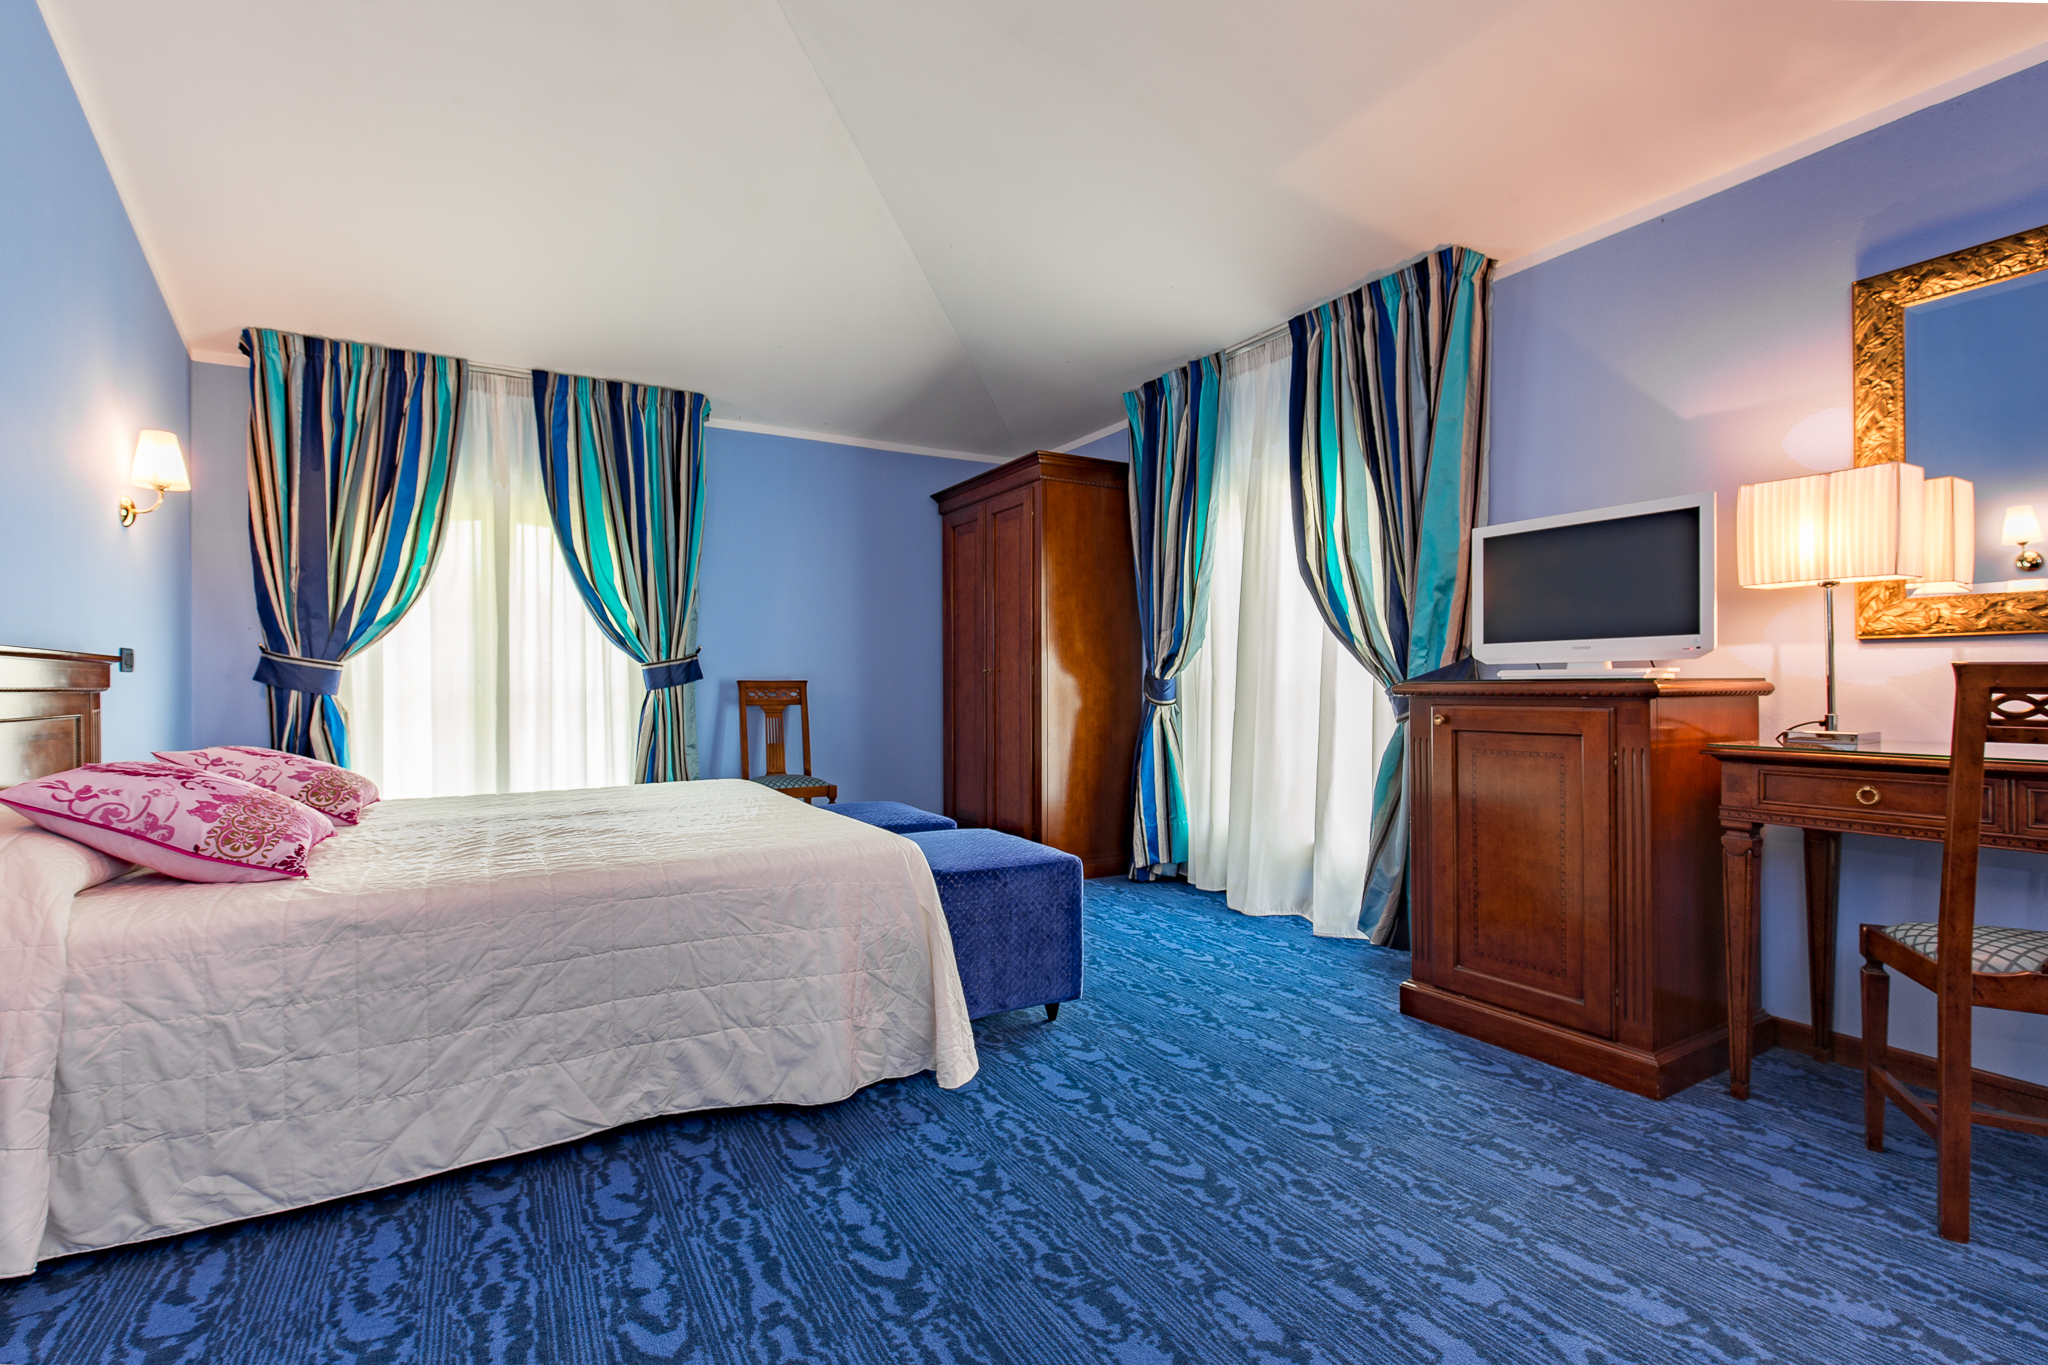 hotel_castello-9197-HDR-64